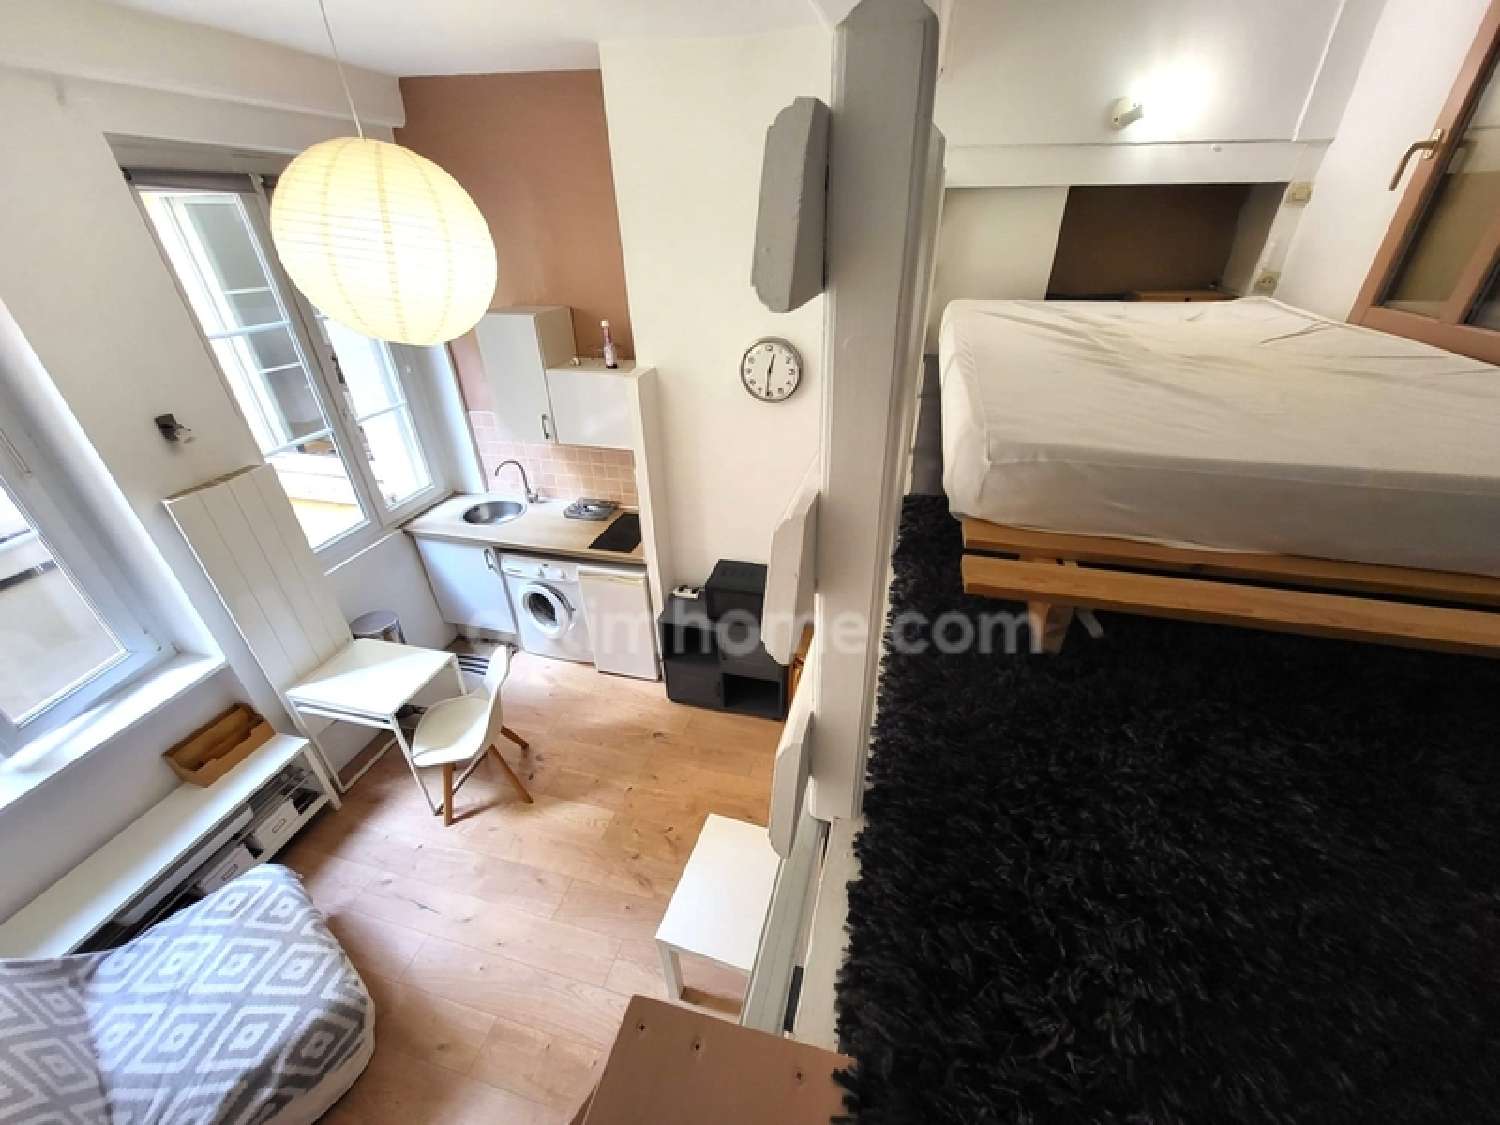  kaufen Wohnung/ Apartment Lyon 2e Arrondissement Rhône 4